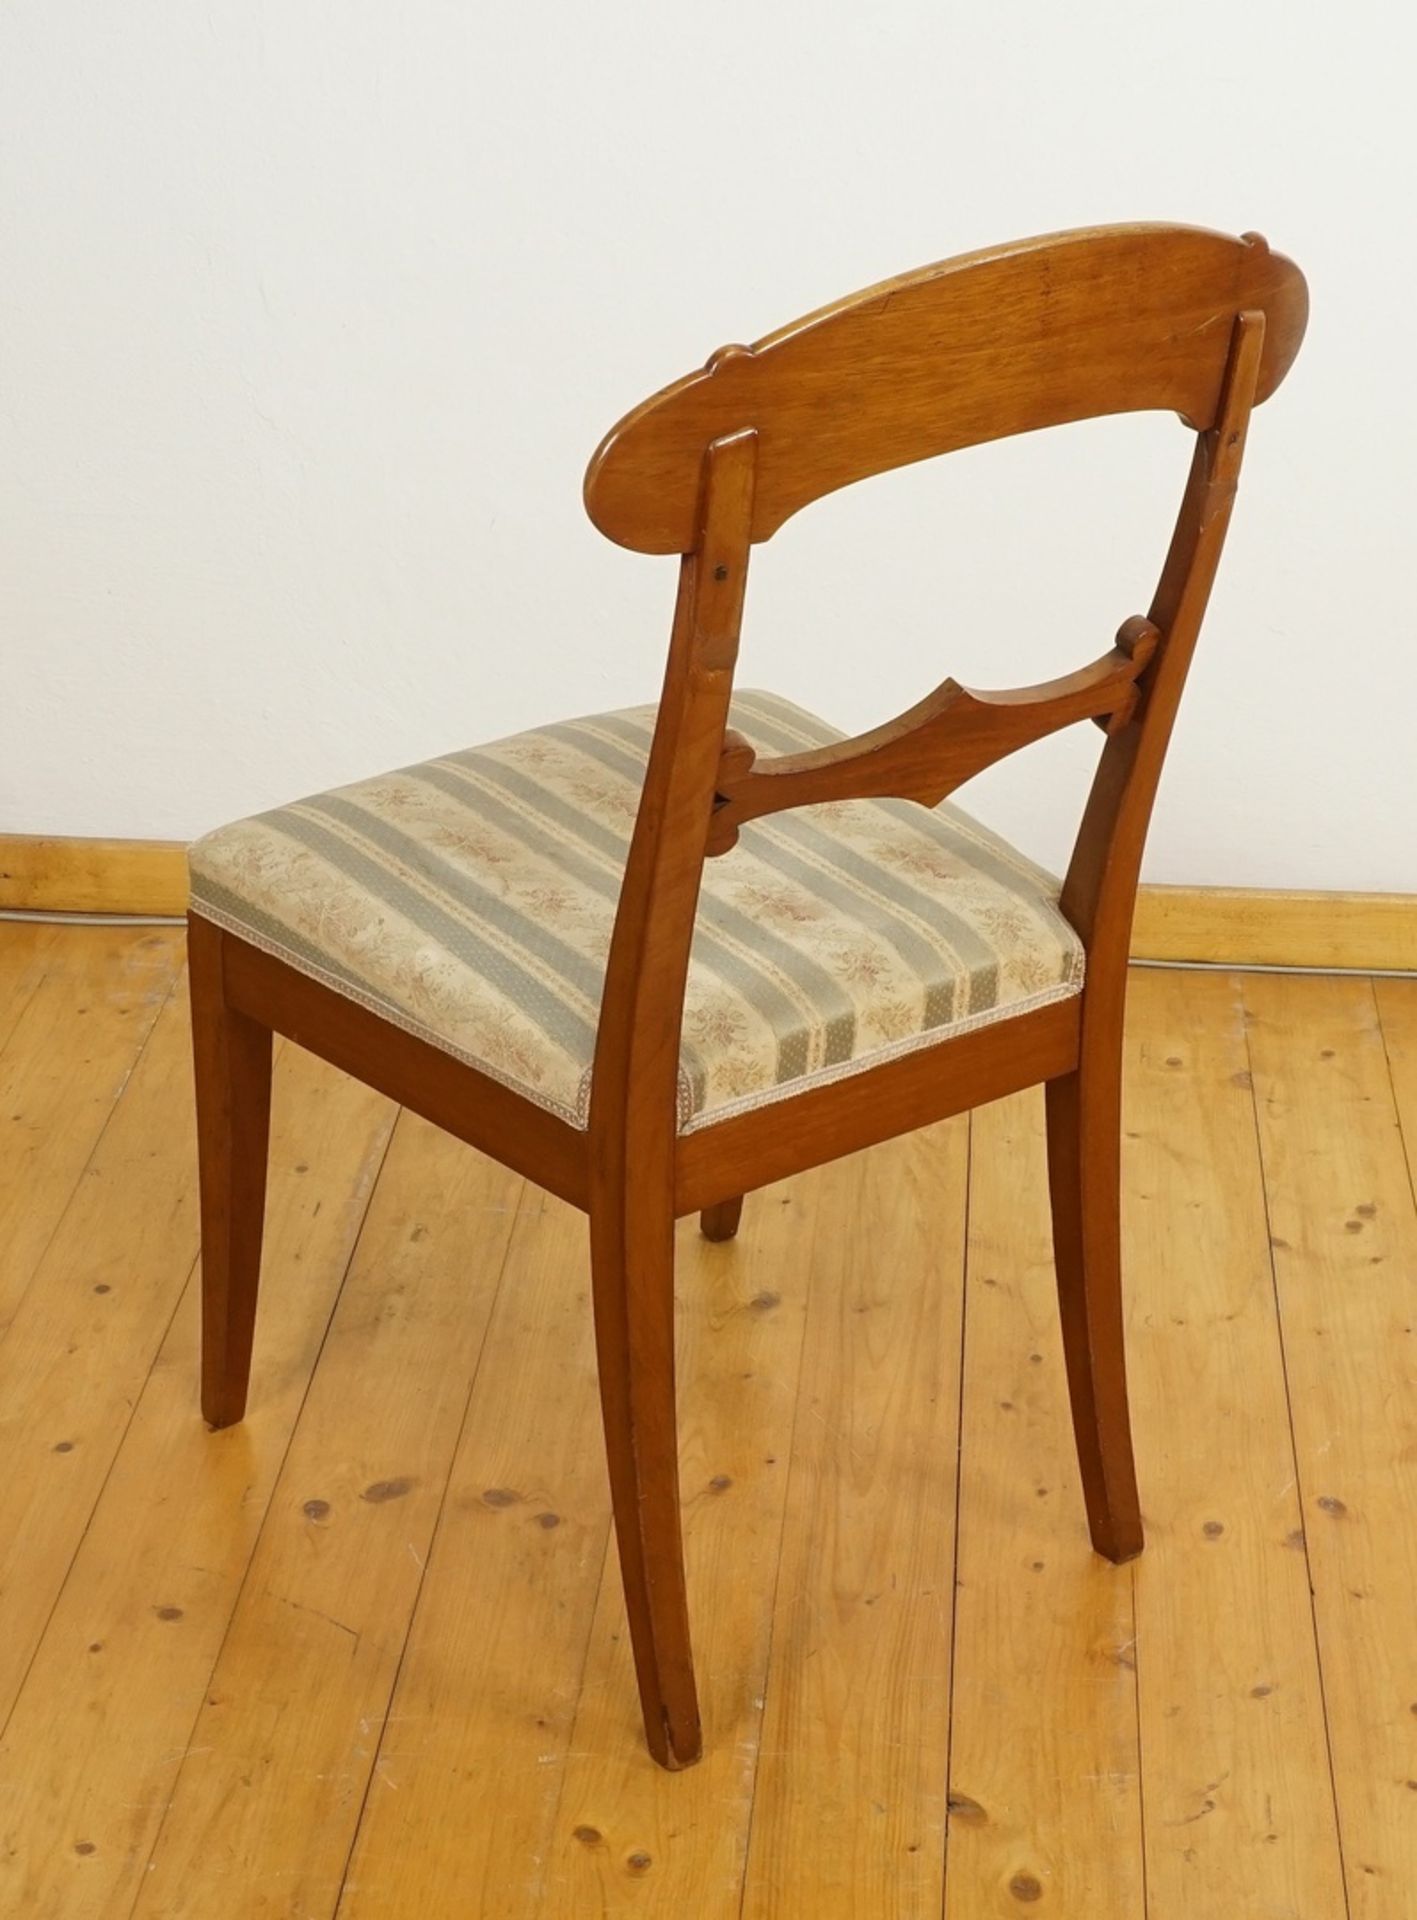 Zwei Stühle im Biedermeierstil, Nussbaum - Image 3 of 5